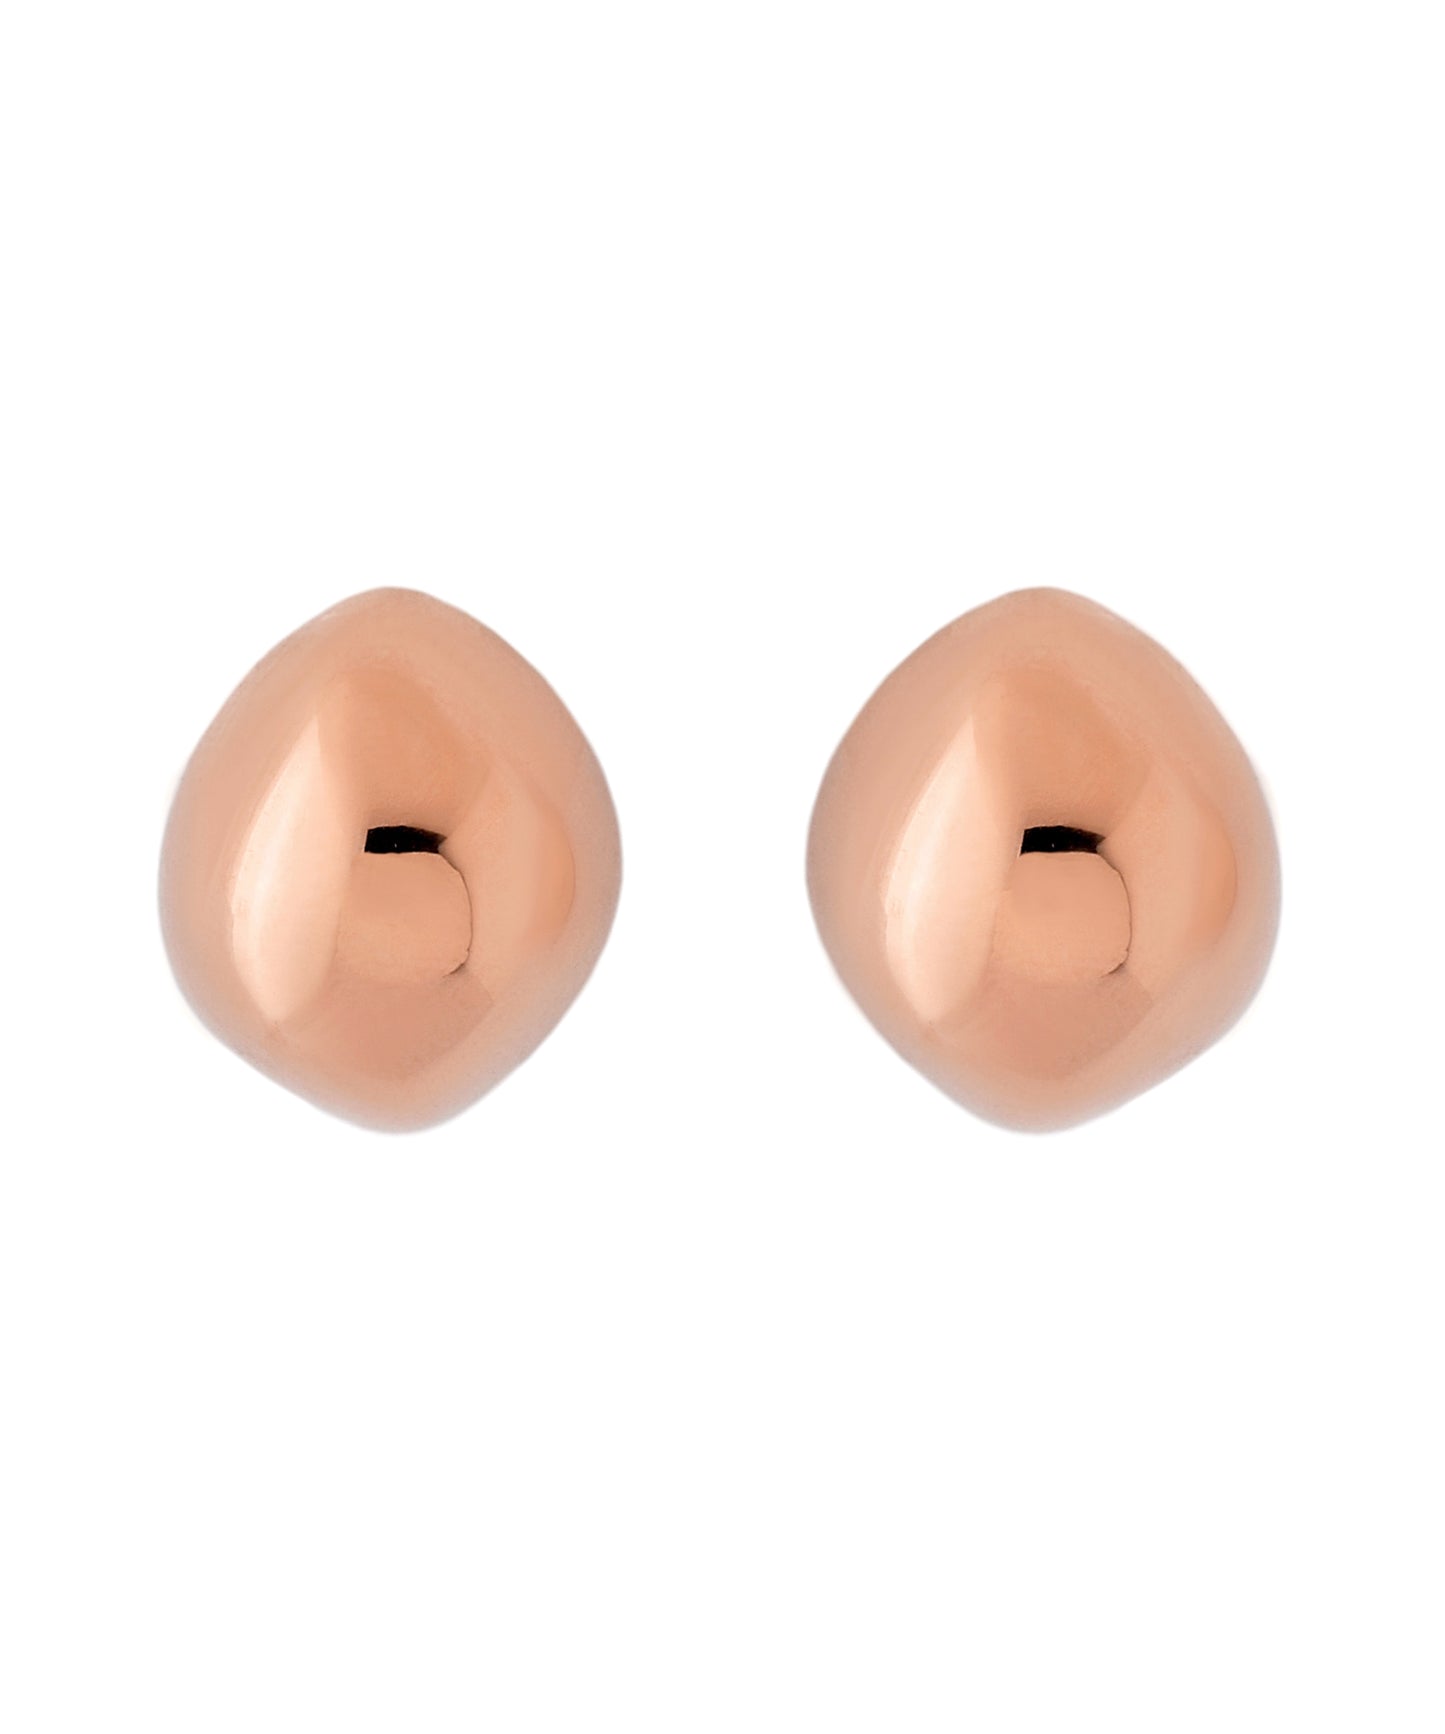 【Stainless Seel IP】 Nuance Drop Earrings